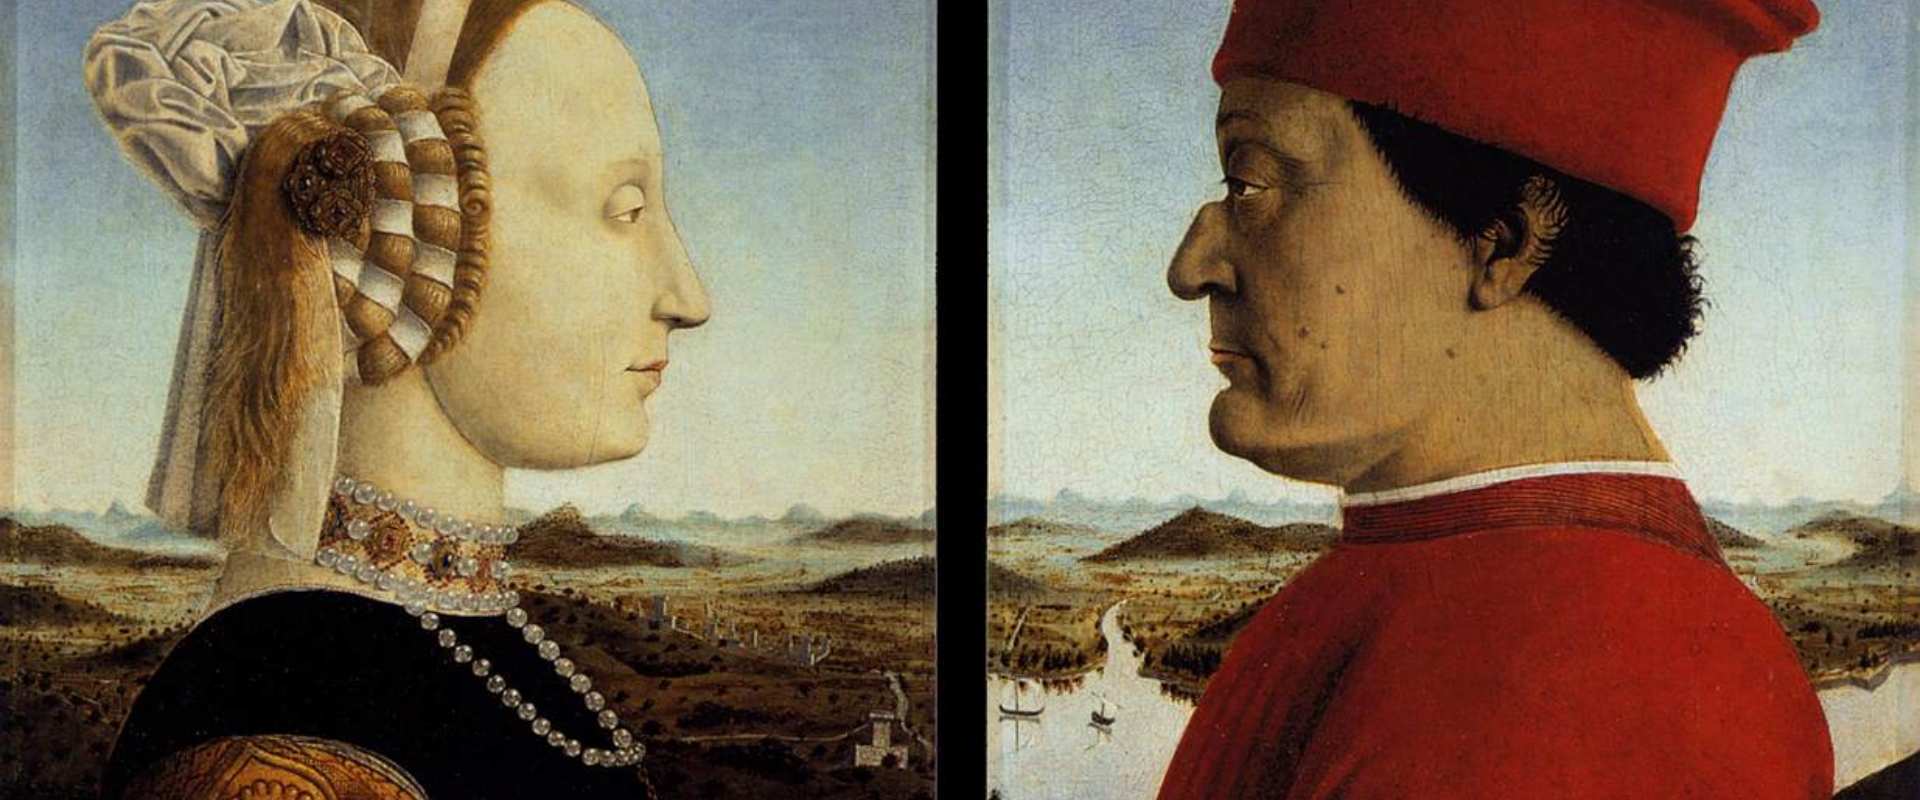 Los Duches de Urbino Federico da Montefeltro y Battista Sforza, de Piero della Francesca